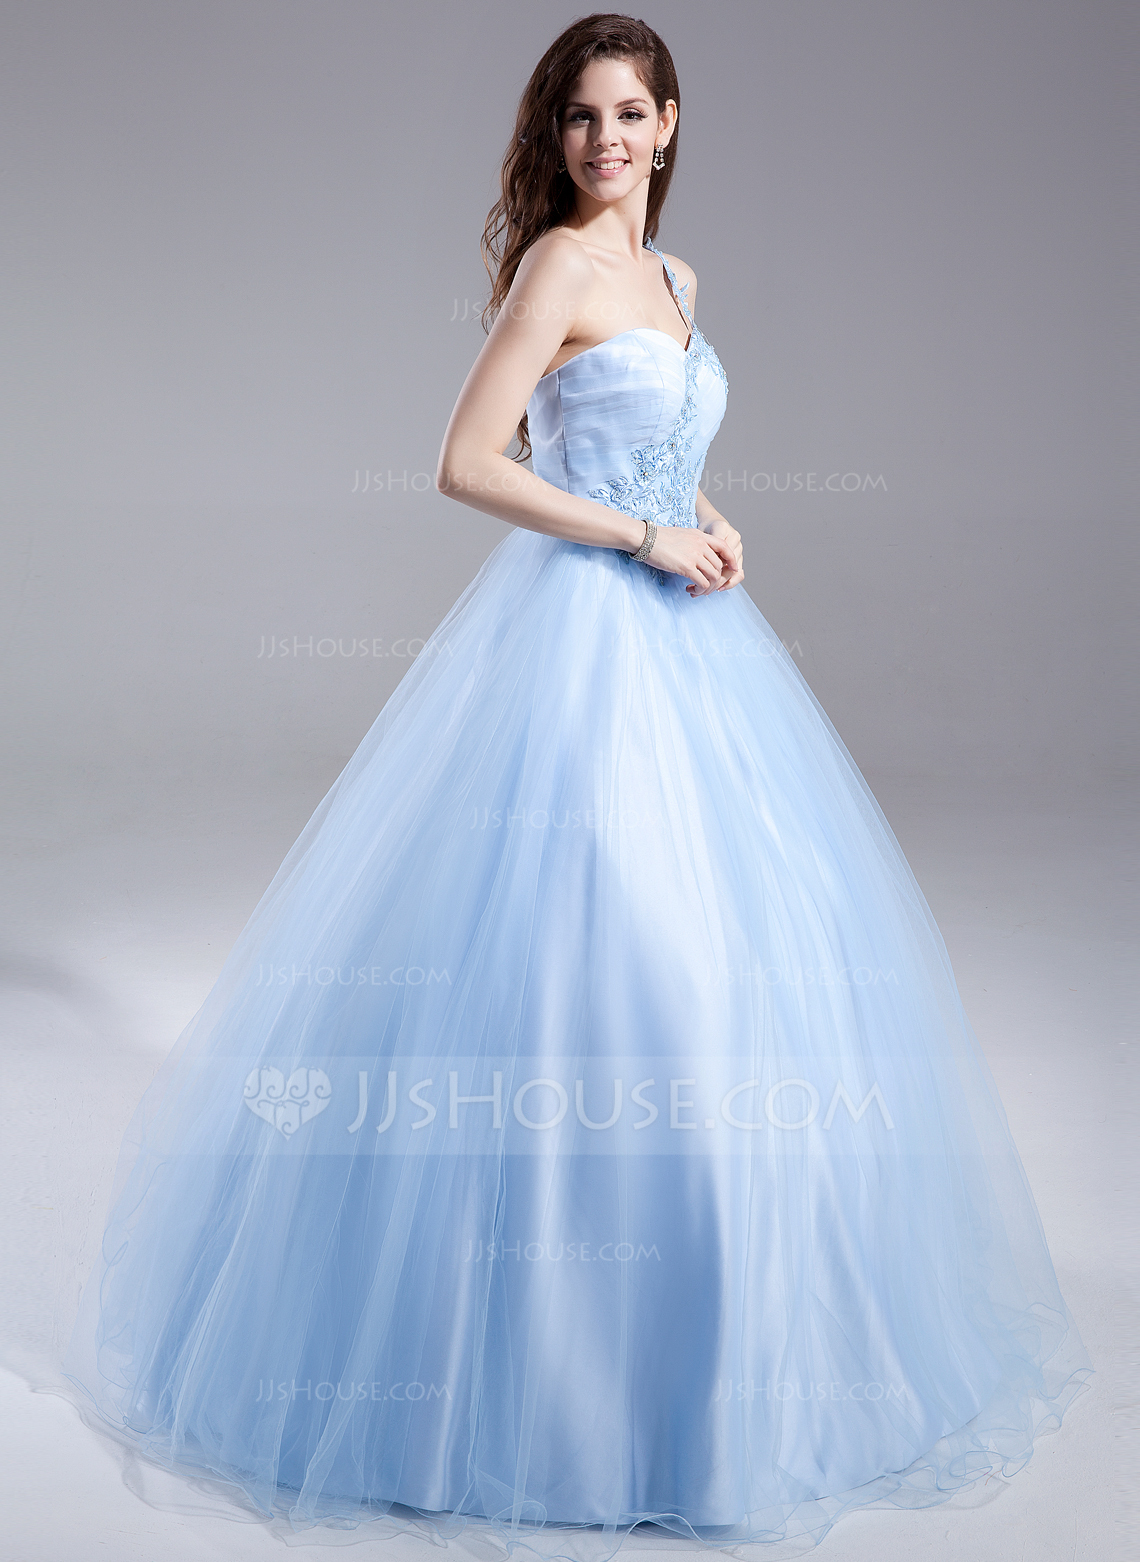 váy dạ hội công chúa màu xanh dương